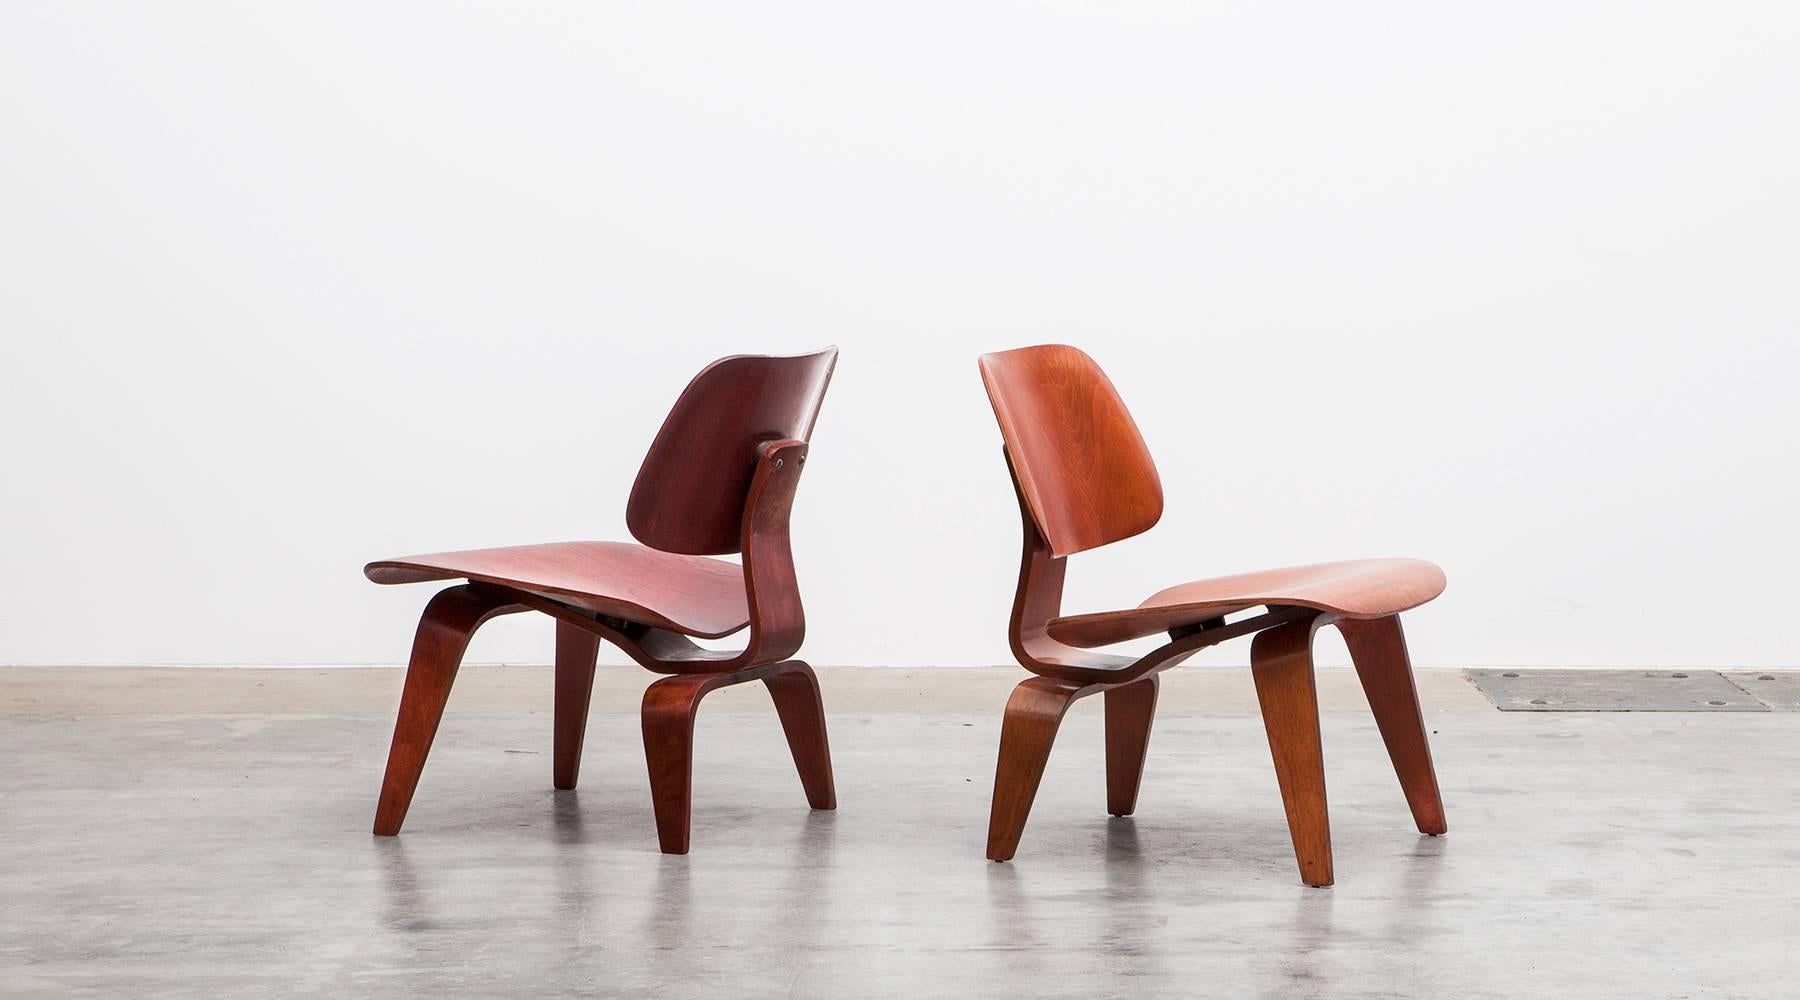 Geformtes Sperrholz in rot, braun LCW Chairs von Charles und Ray Eames, USA, 1948.

Eine Reihe von Charles und Ray Eames 